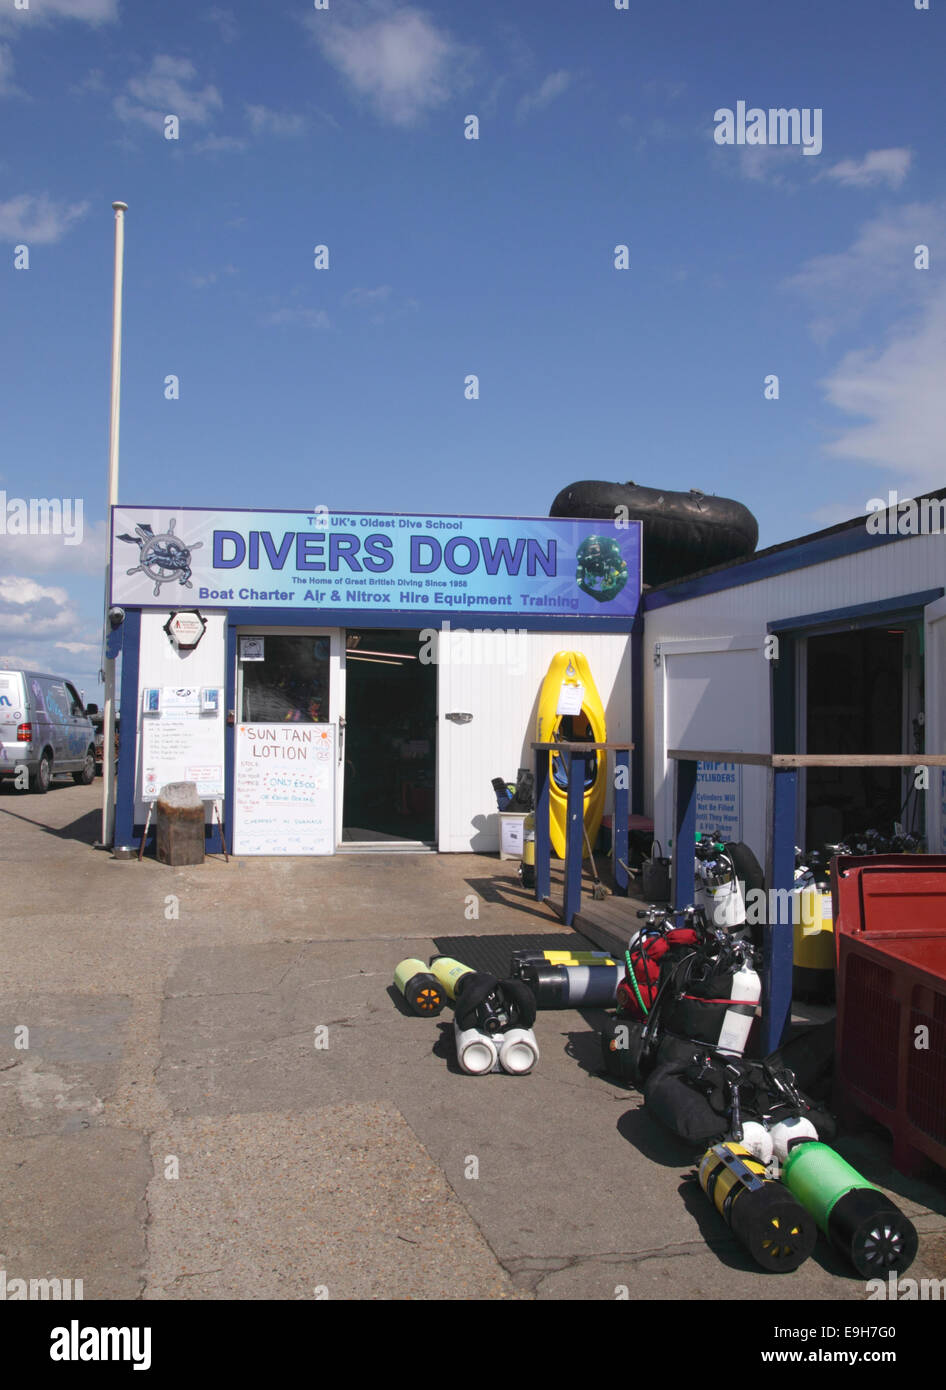 École de plongée plongeurs vers le bas Angleterre Swanage Dorset Banque D'Images